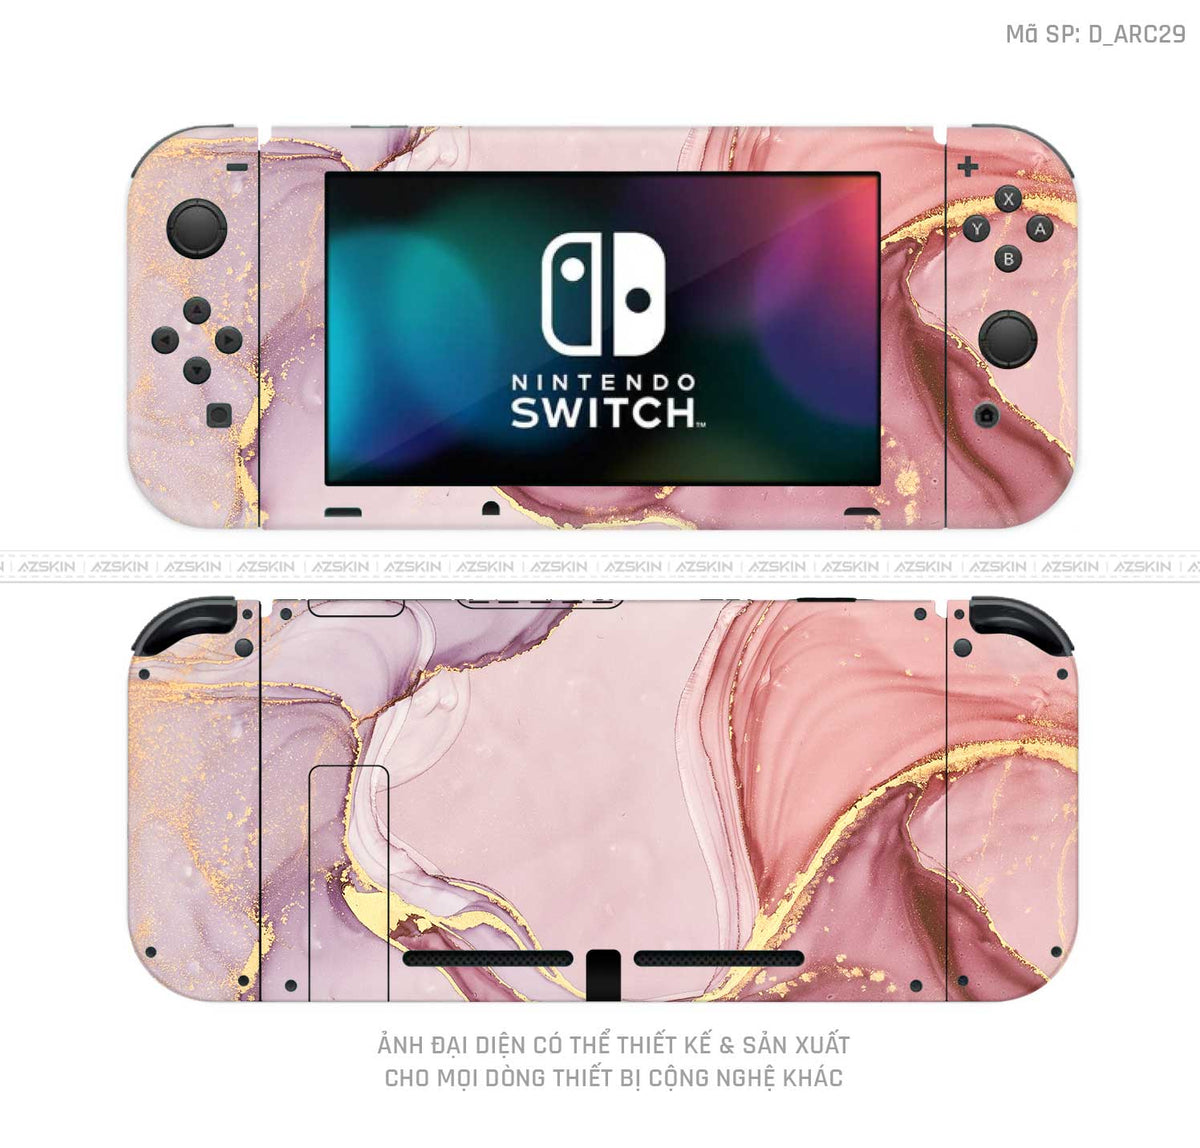 Dán Skin Máy Chơi Game Nintendo Switch Hình Nghệ Thuật Arcrylic | D_ARC29